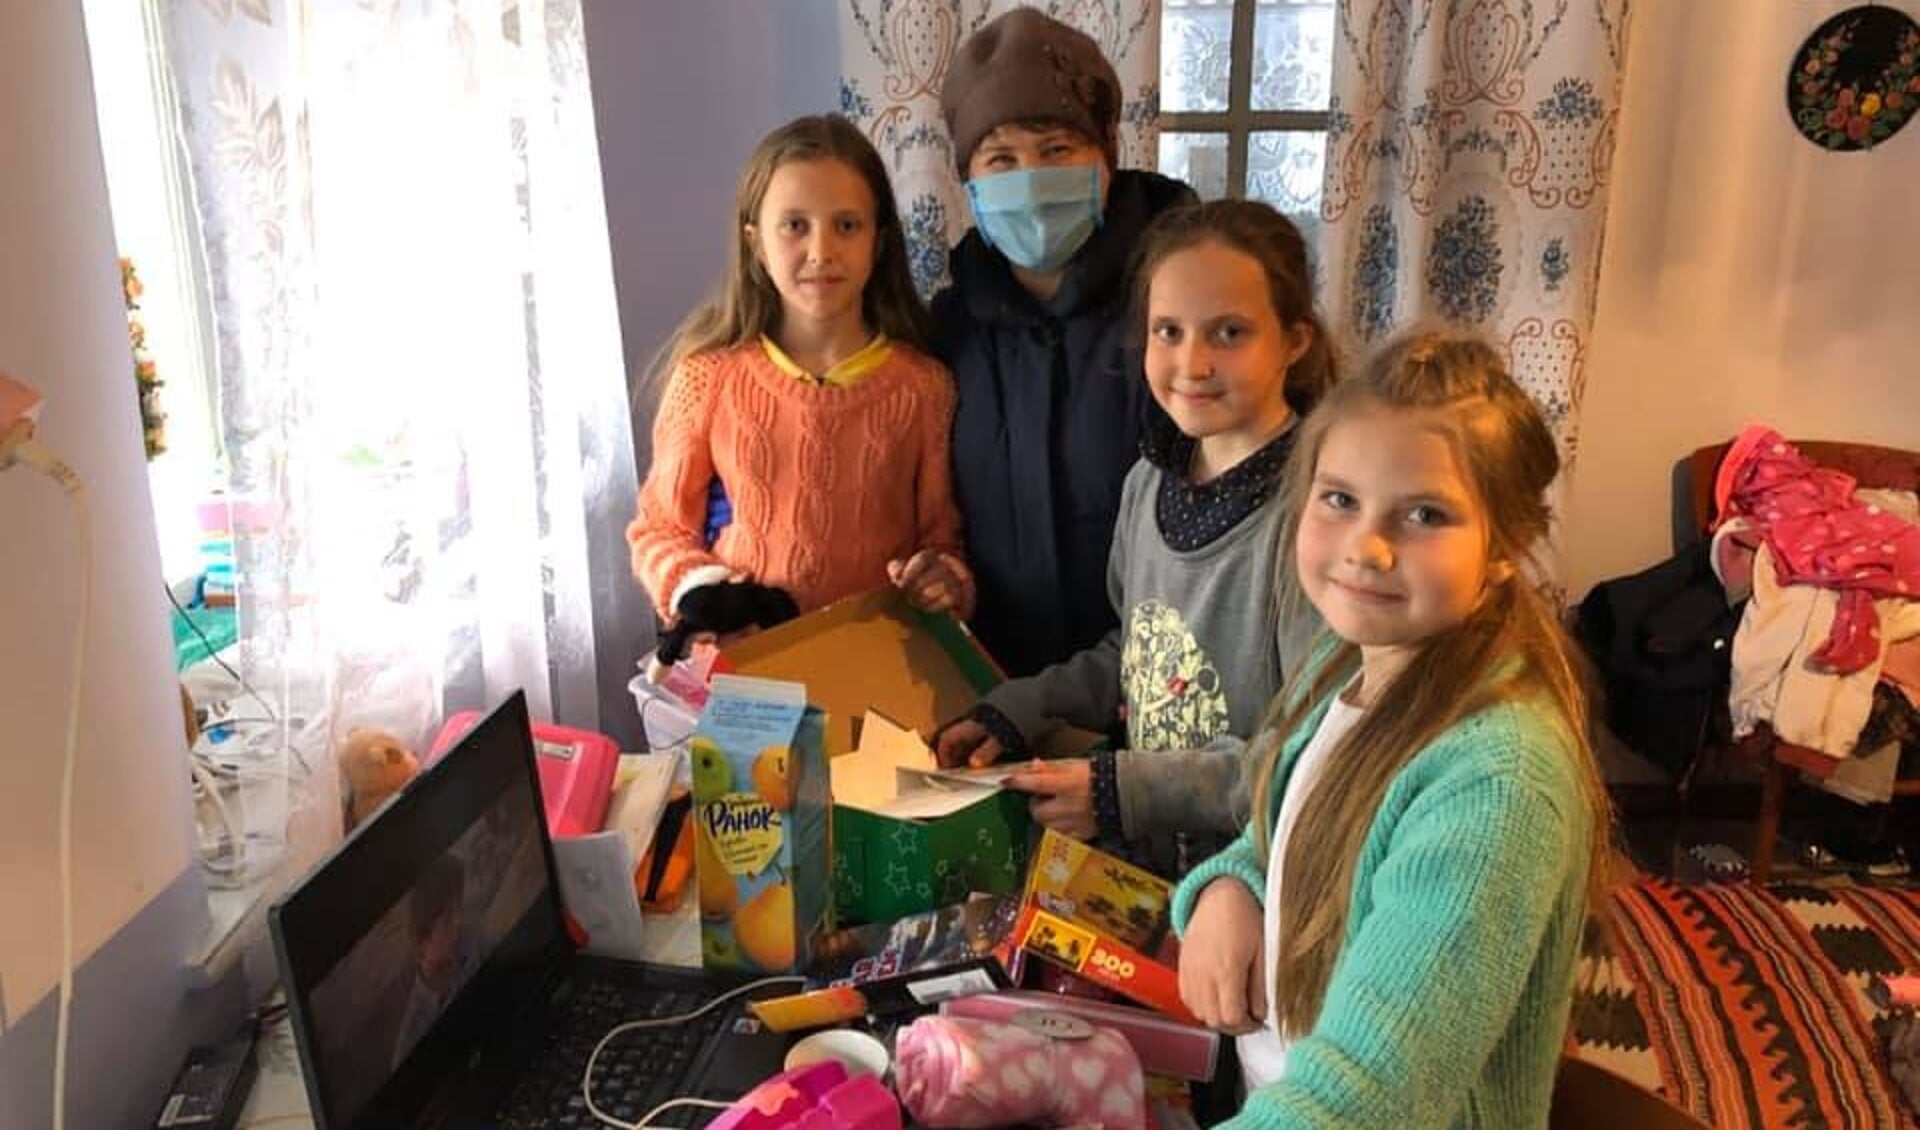 Ruslana, lokale partner van Kom over en help in Oekraïne bezoekt kinderen thuis met een zorgpakket. 